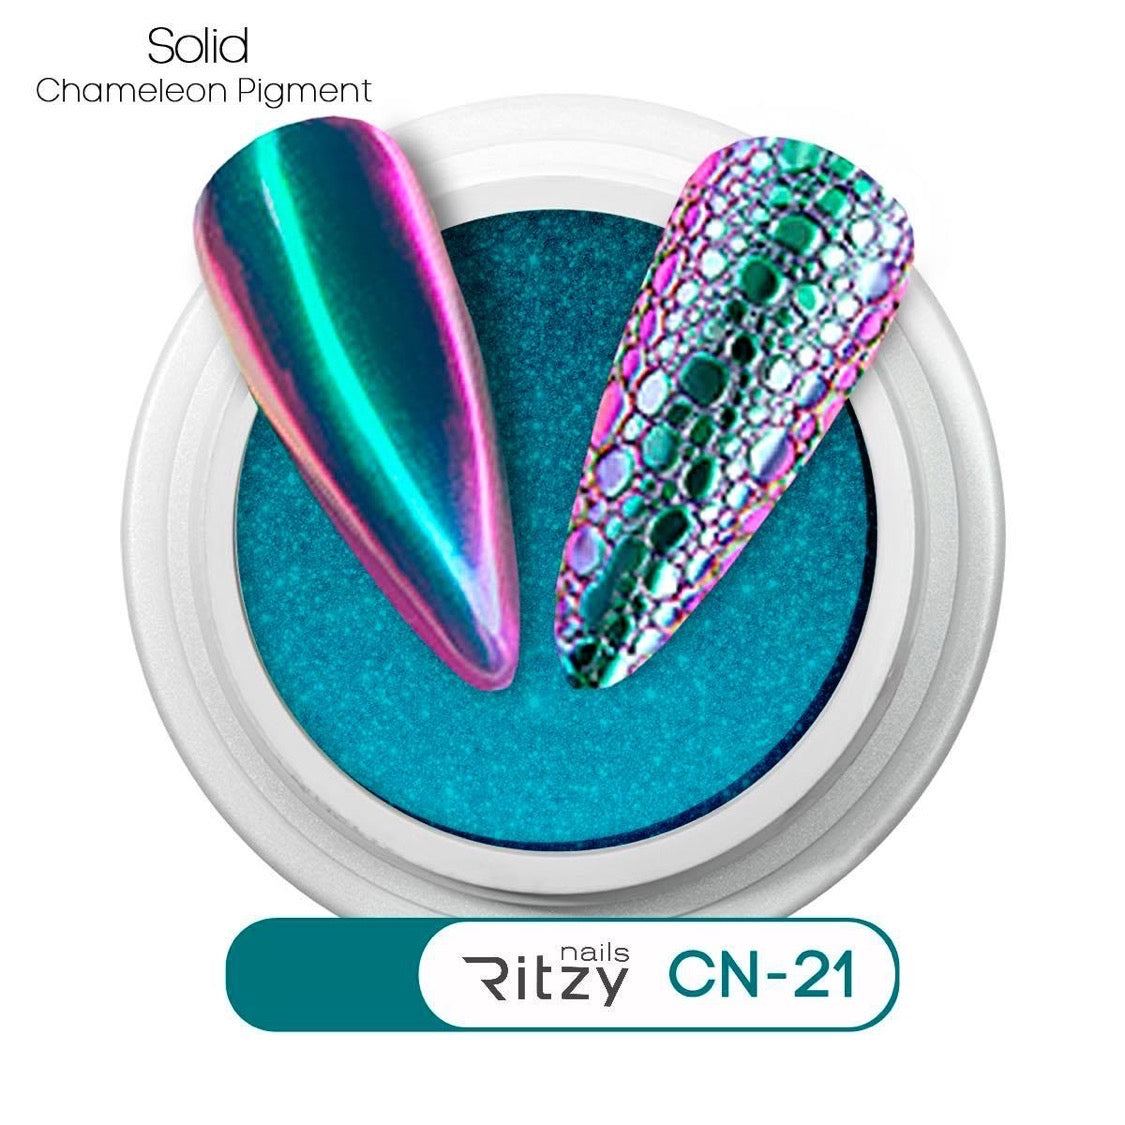 Chameleon pigment CN-21